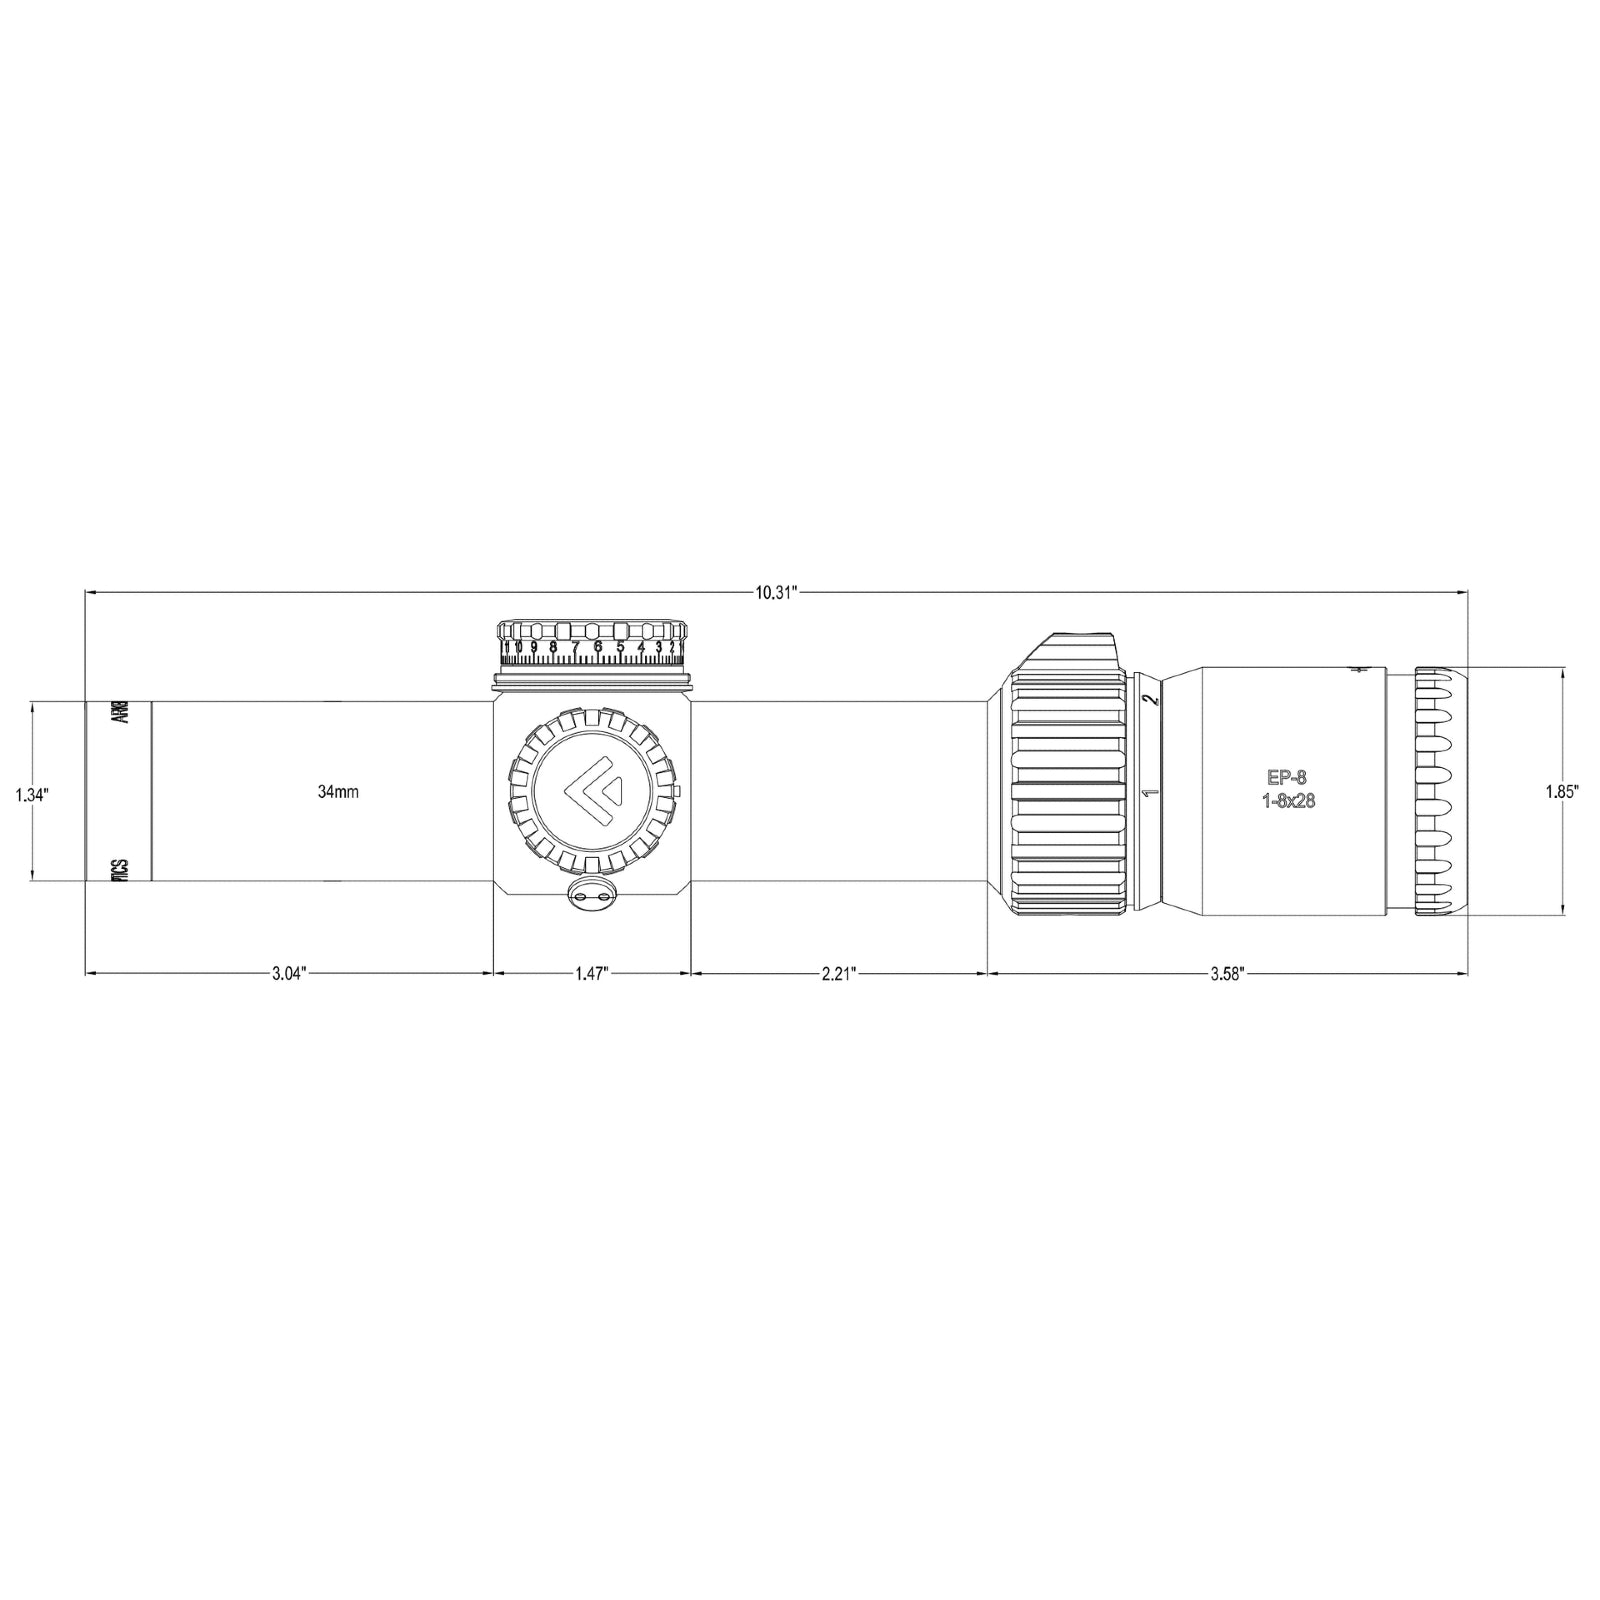 EP-8 1-8x28 LPVO FFP Illuminated Reticle - 34mm Tube